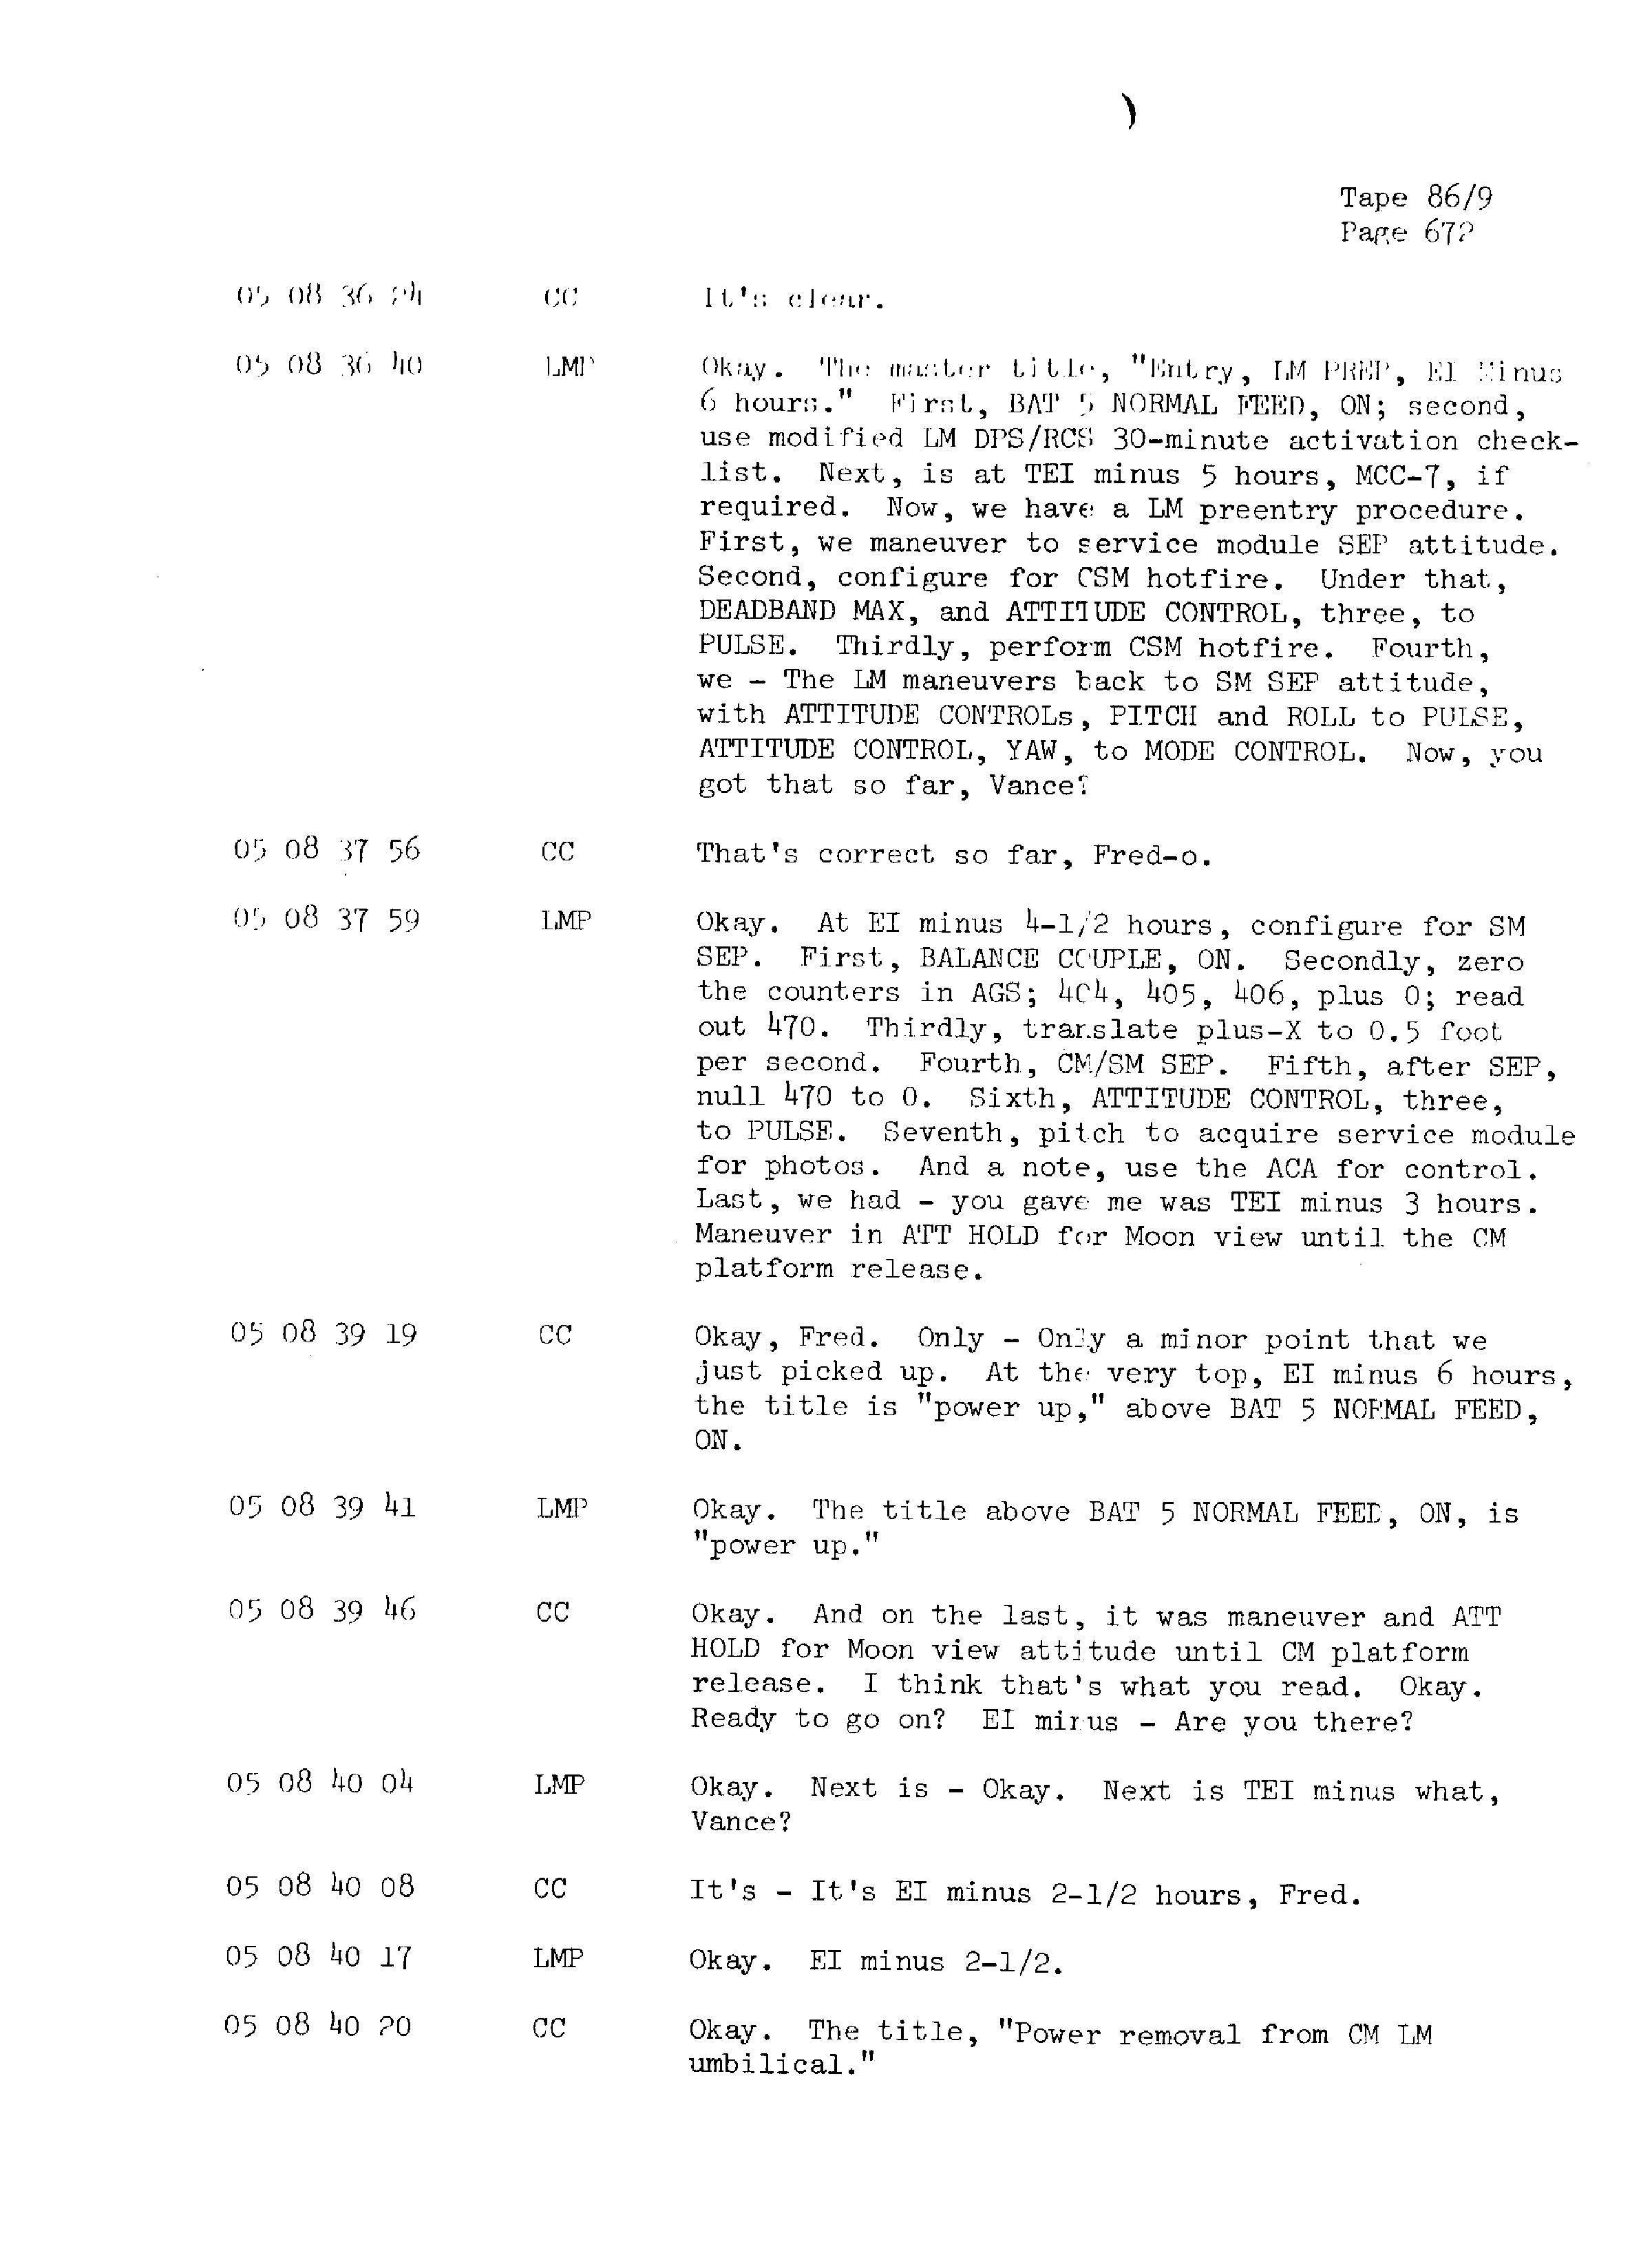 Page 679 of Apollo 13’s original transcript